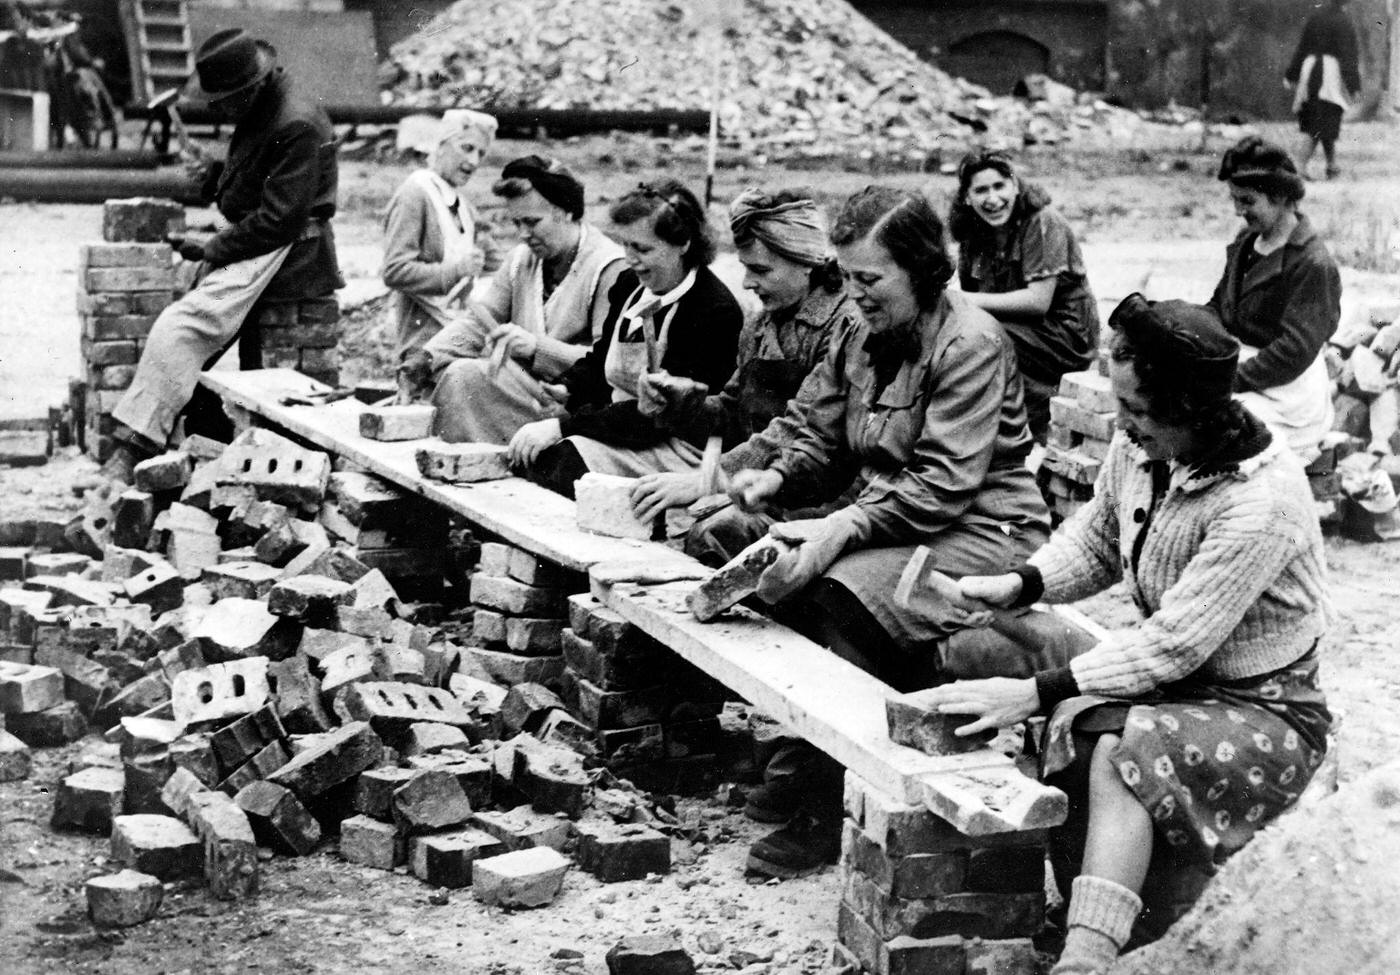 Berliner women working in the ruins of Berlin, September 1945.